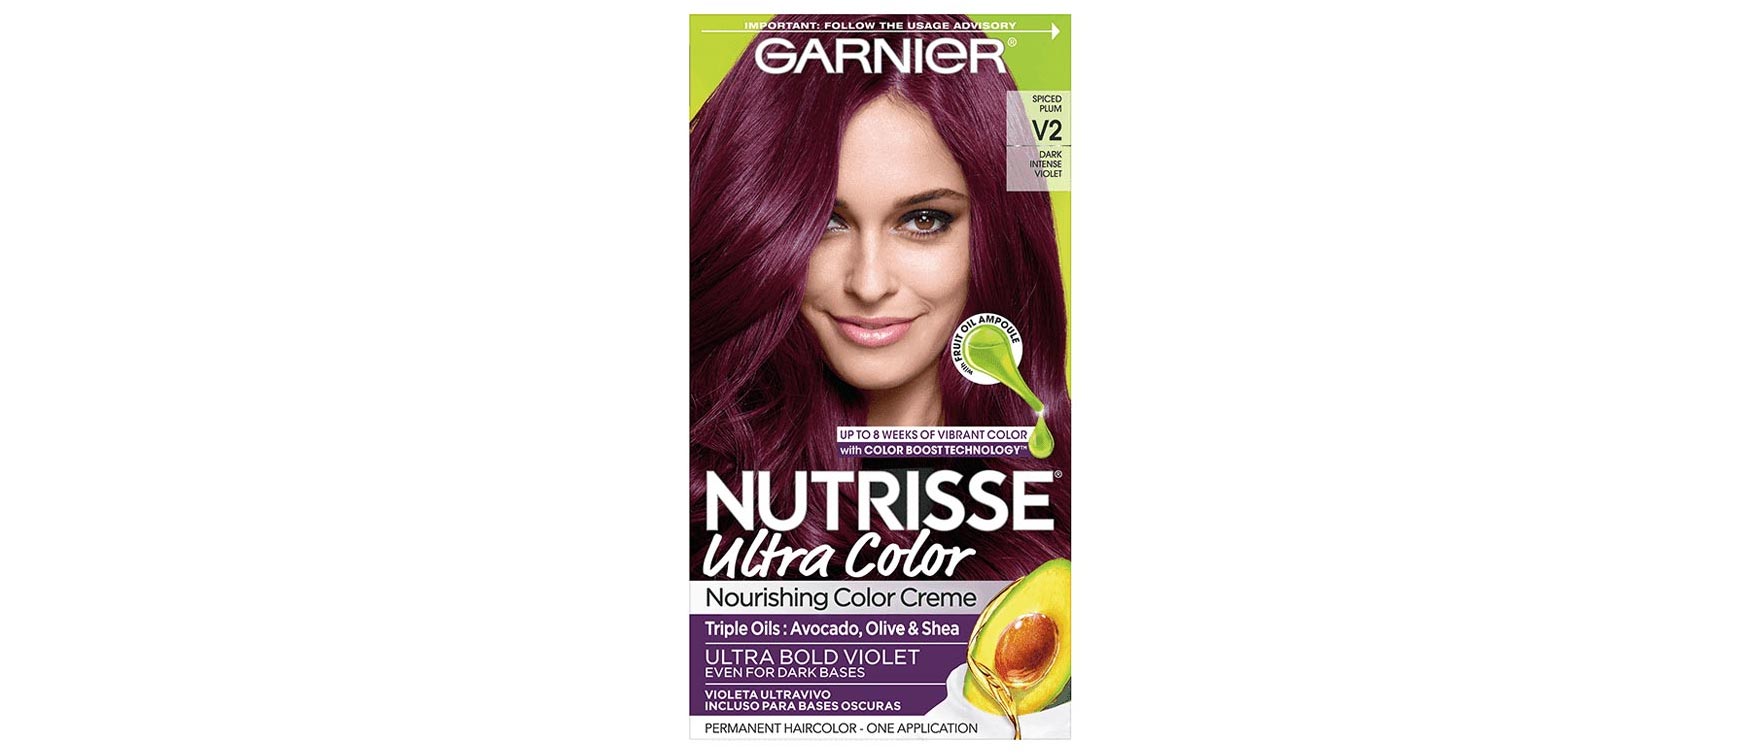 Garnier's Nutrisse Ultra Color